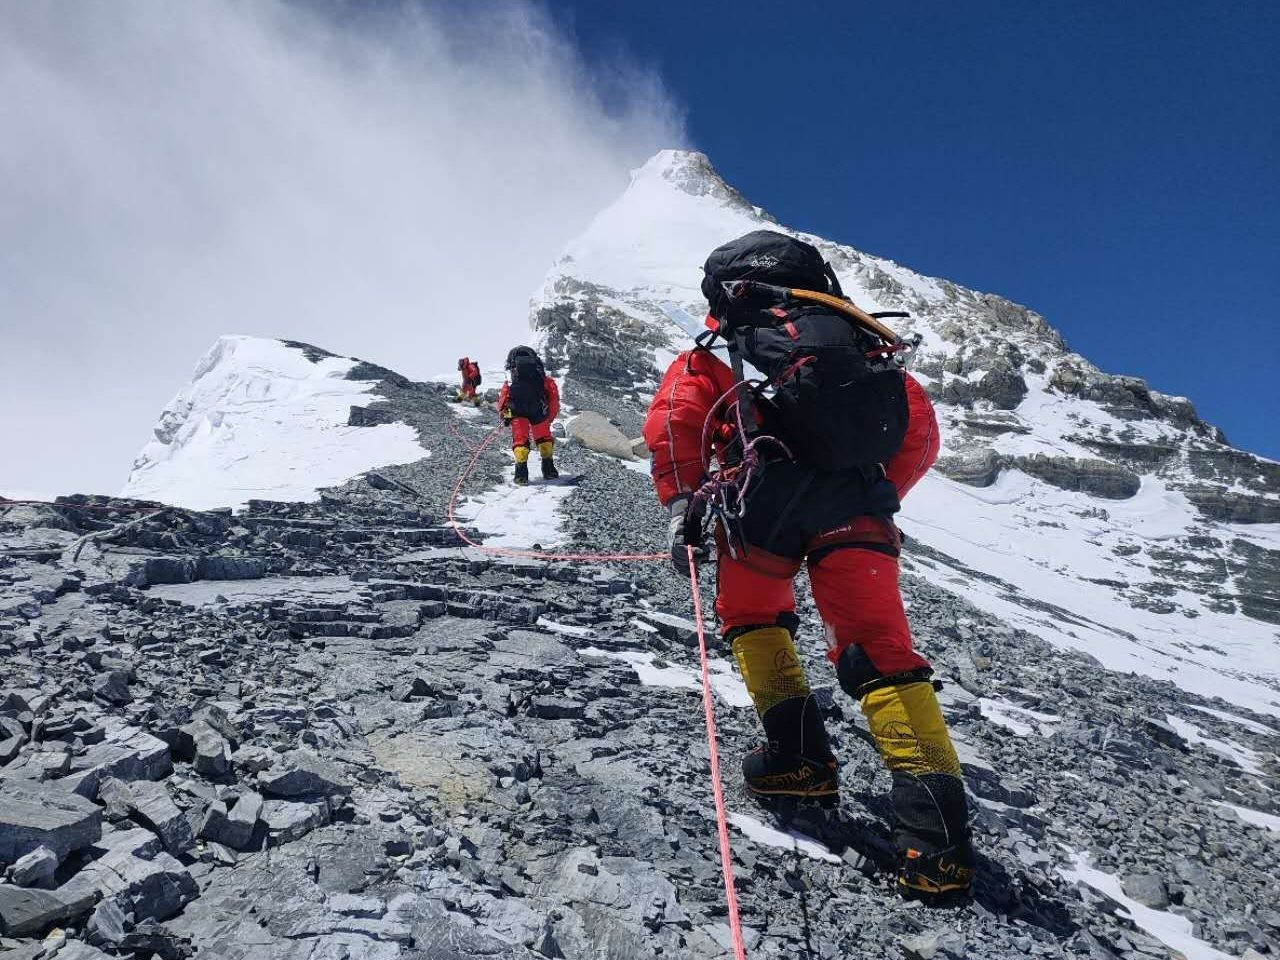 БНХАУ Төвөдийн талаас Эверест рүү авирахыг хориглолоо